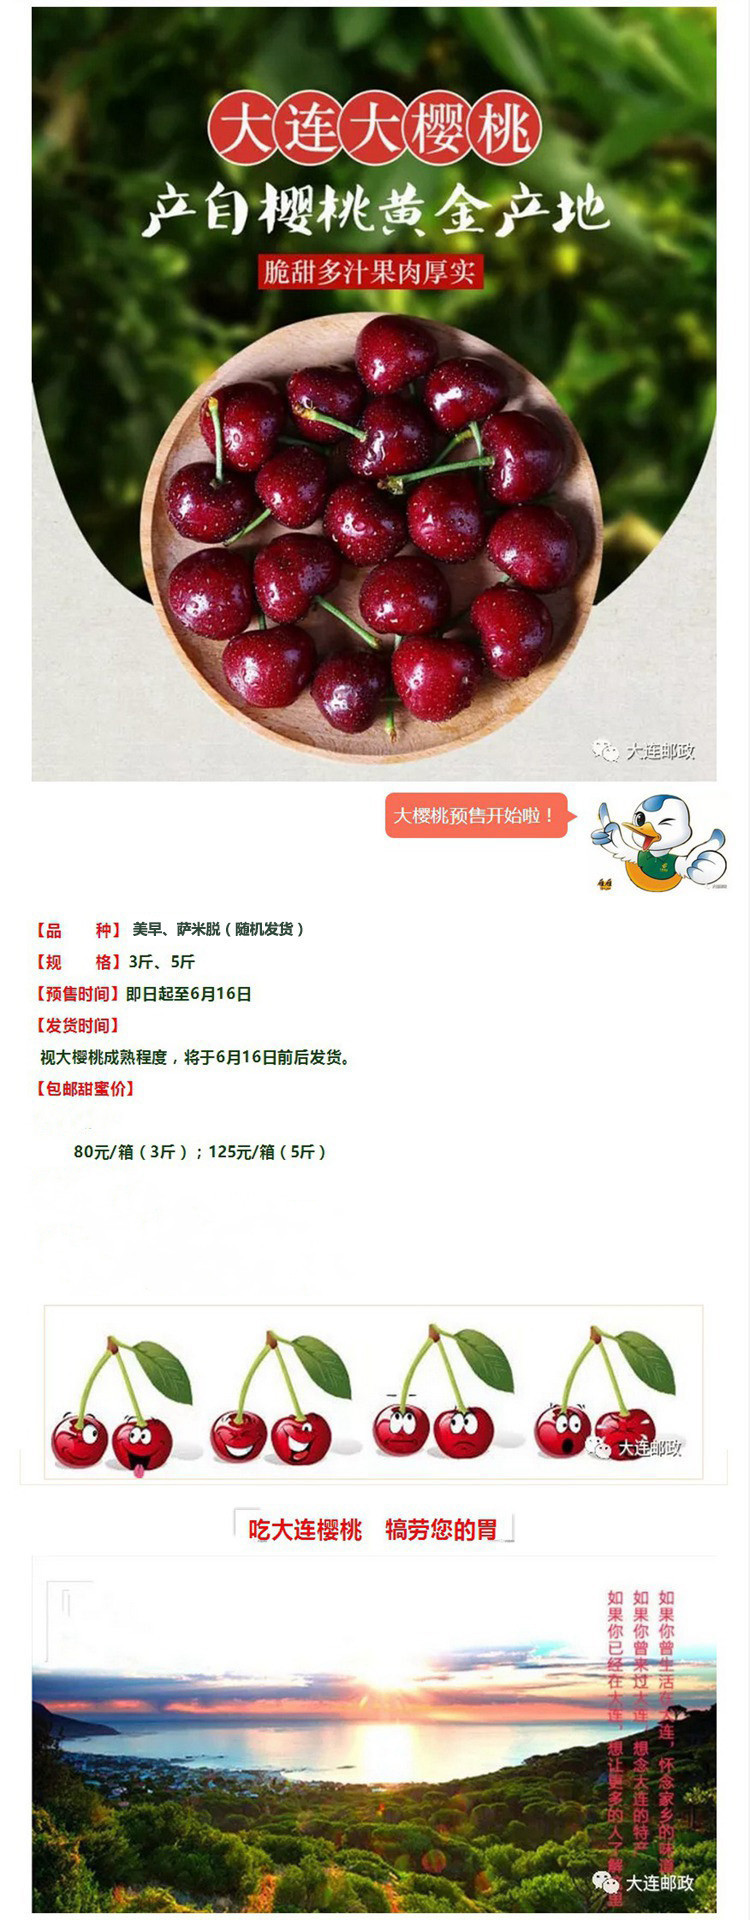 【葫芦岛馆】大连大樱桃（美早、萨米脱随机发货） 3斤装 辽宁省内包邮